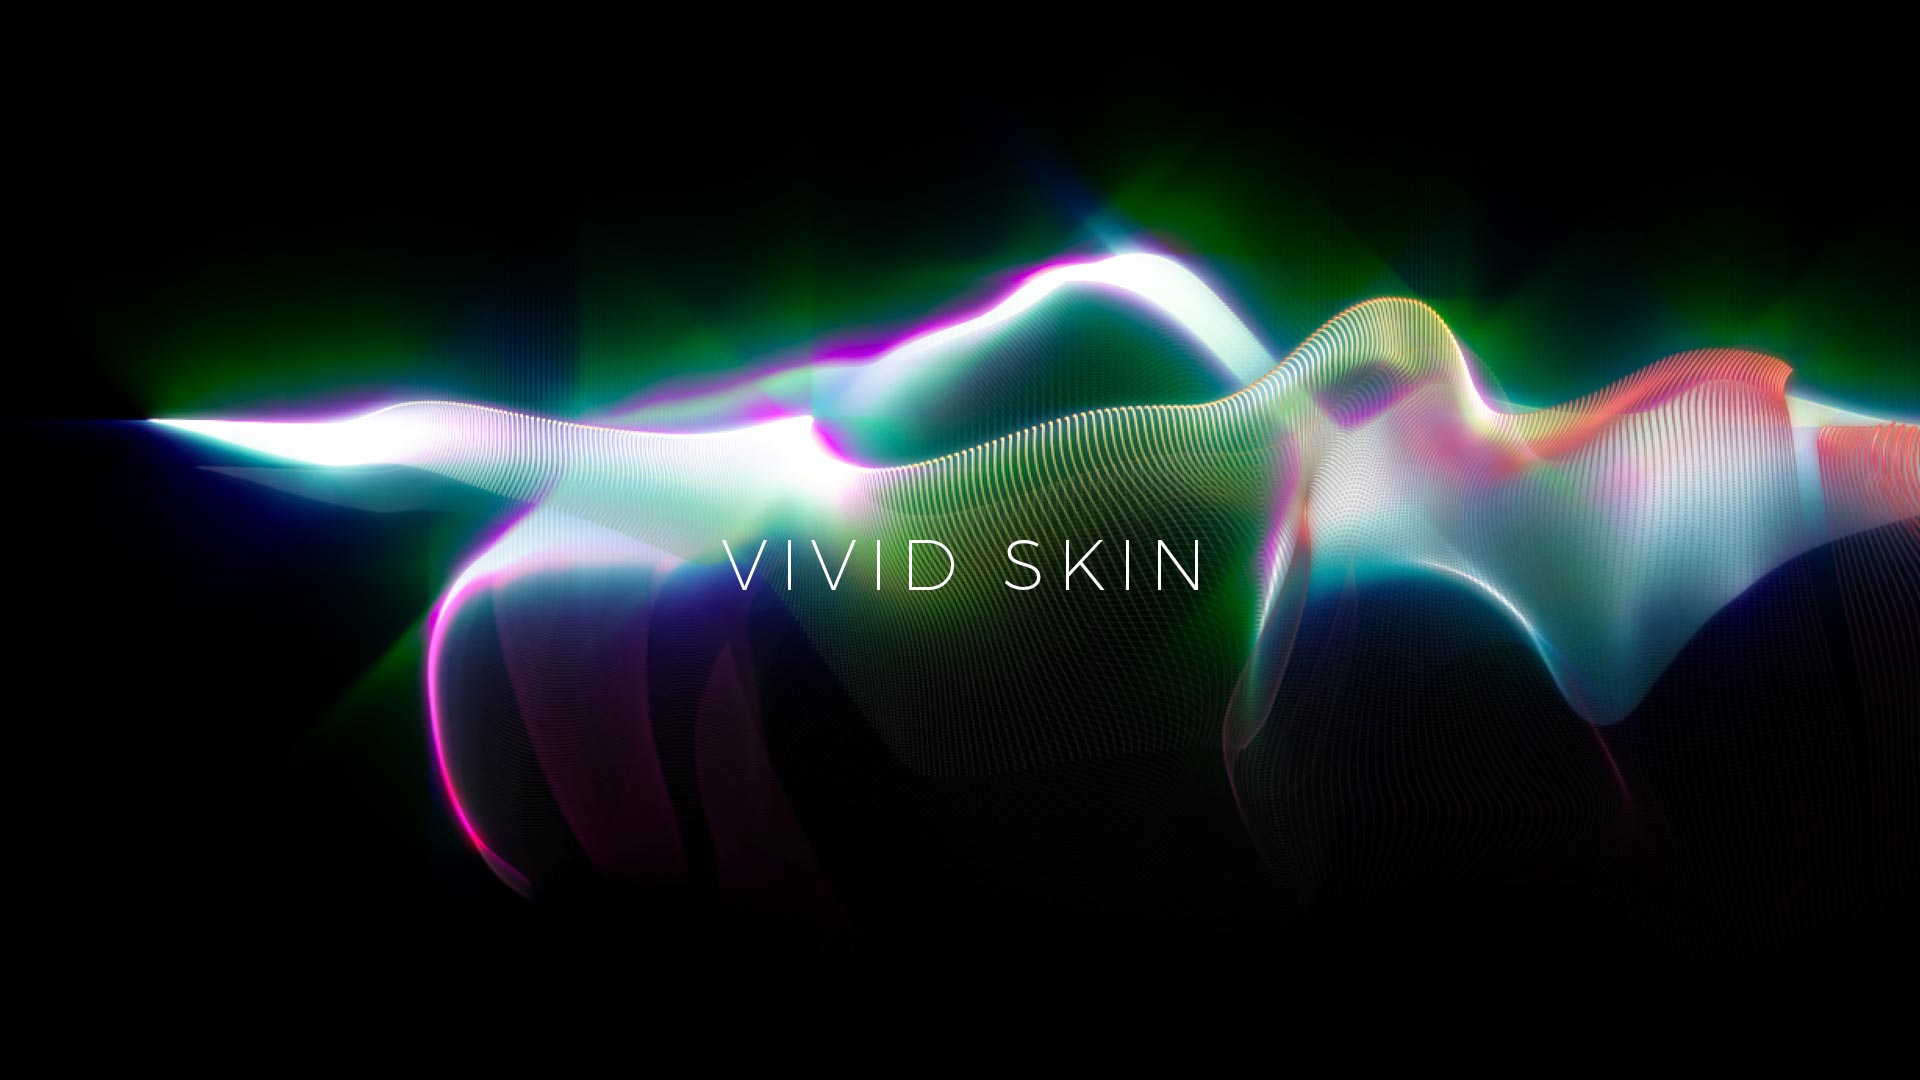 Vivid Skin